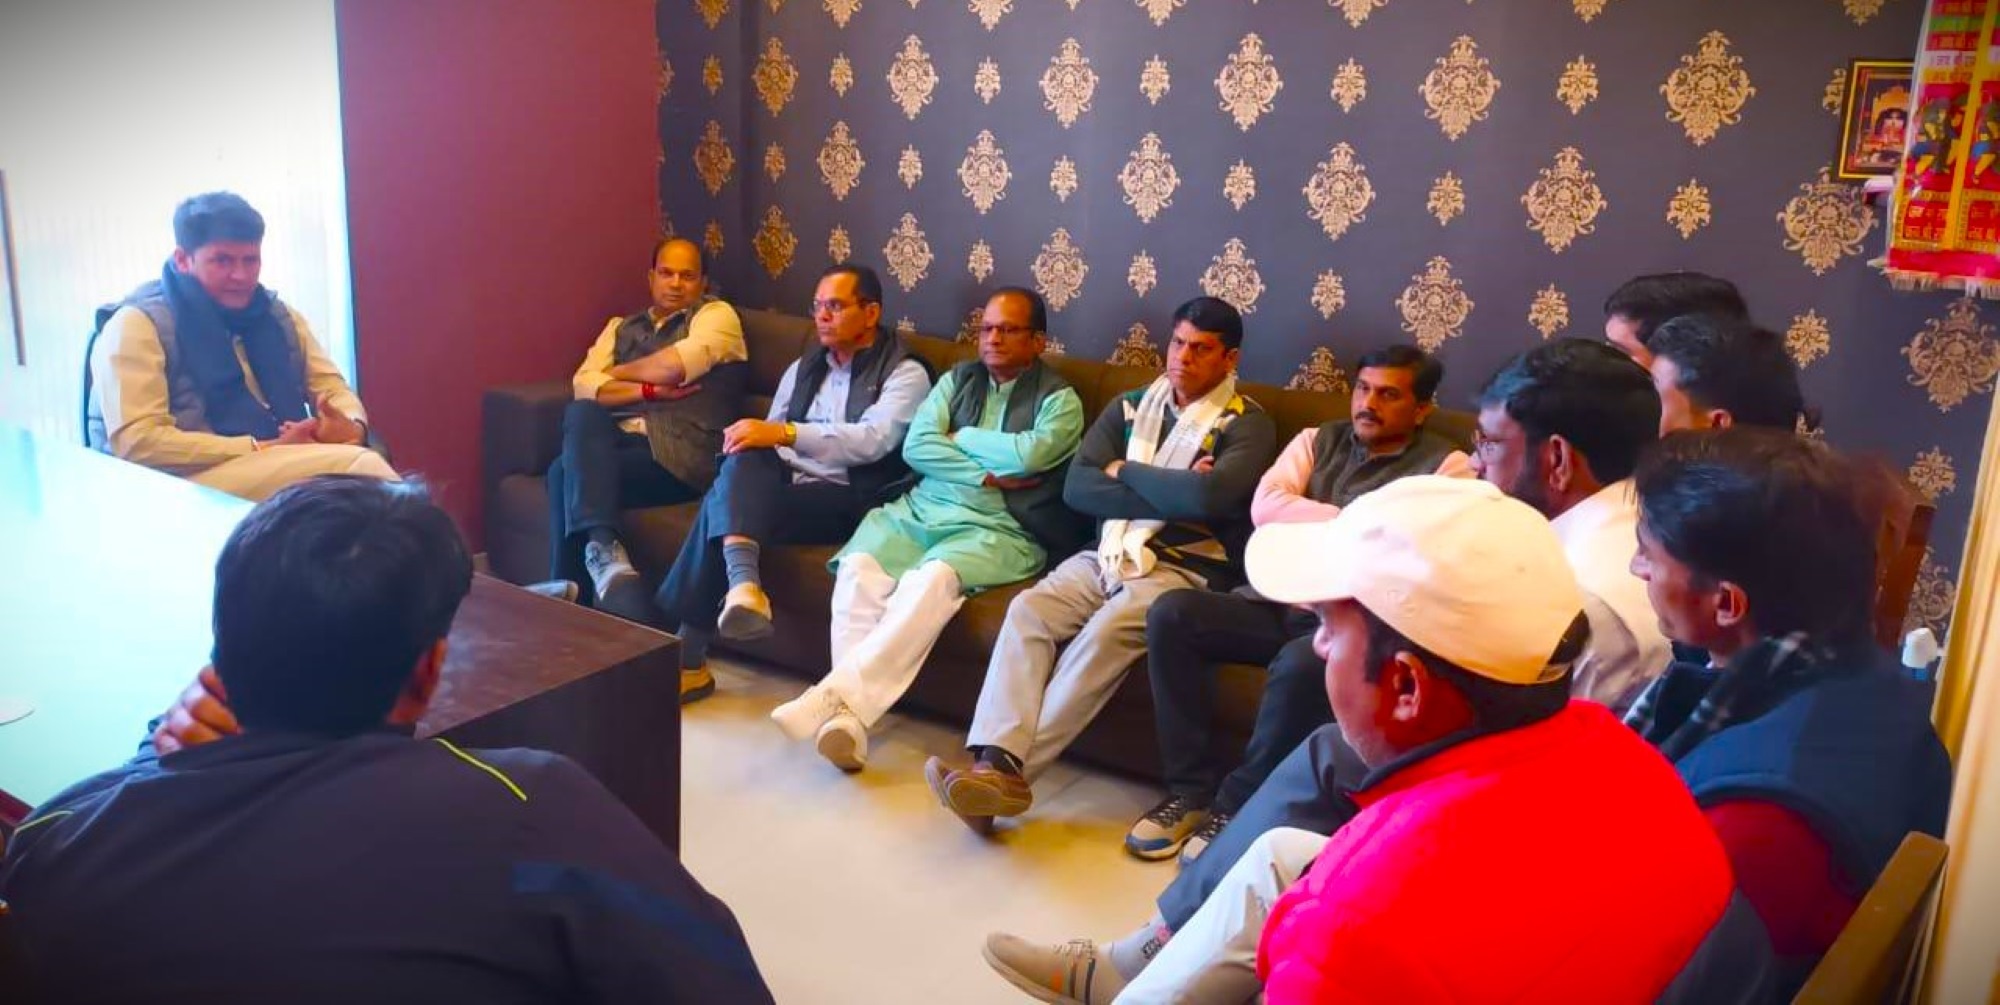 जयपुर में 25 जनवरी को आयोजित होने वाले रोड शो को लेकर पूर्व विधायक रामलाल शर्मा ने ली मीटिंग